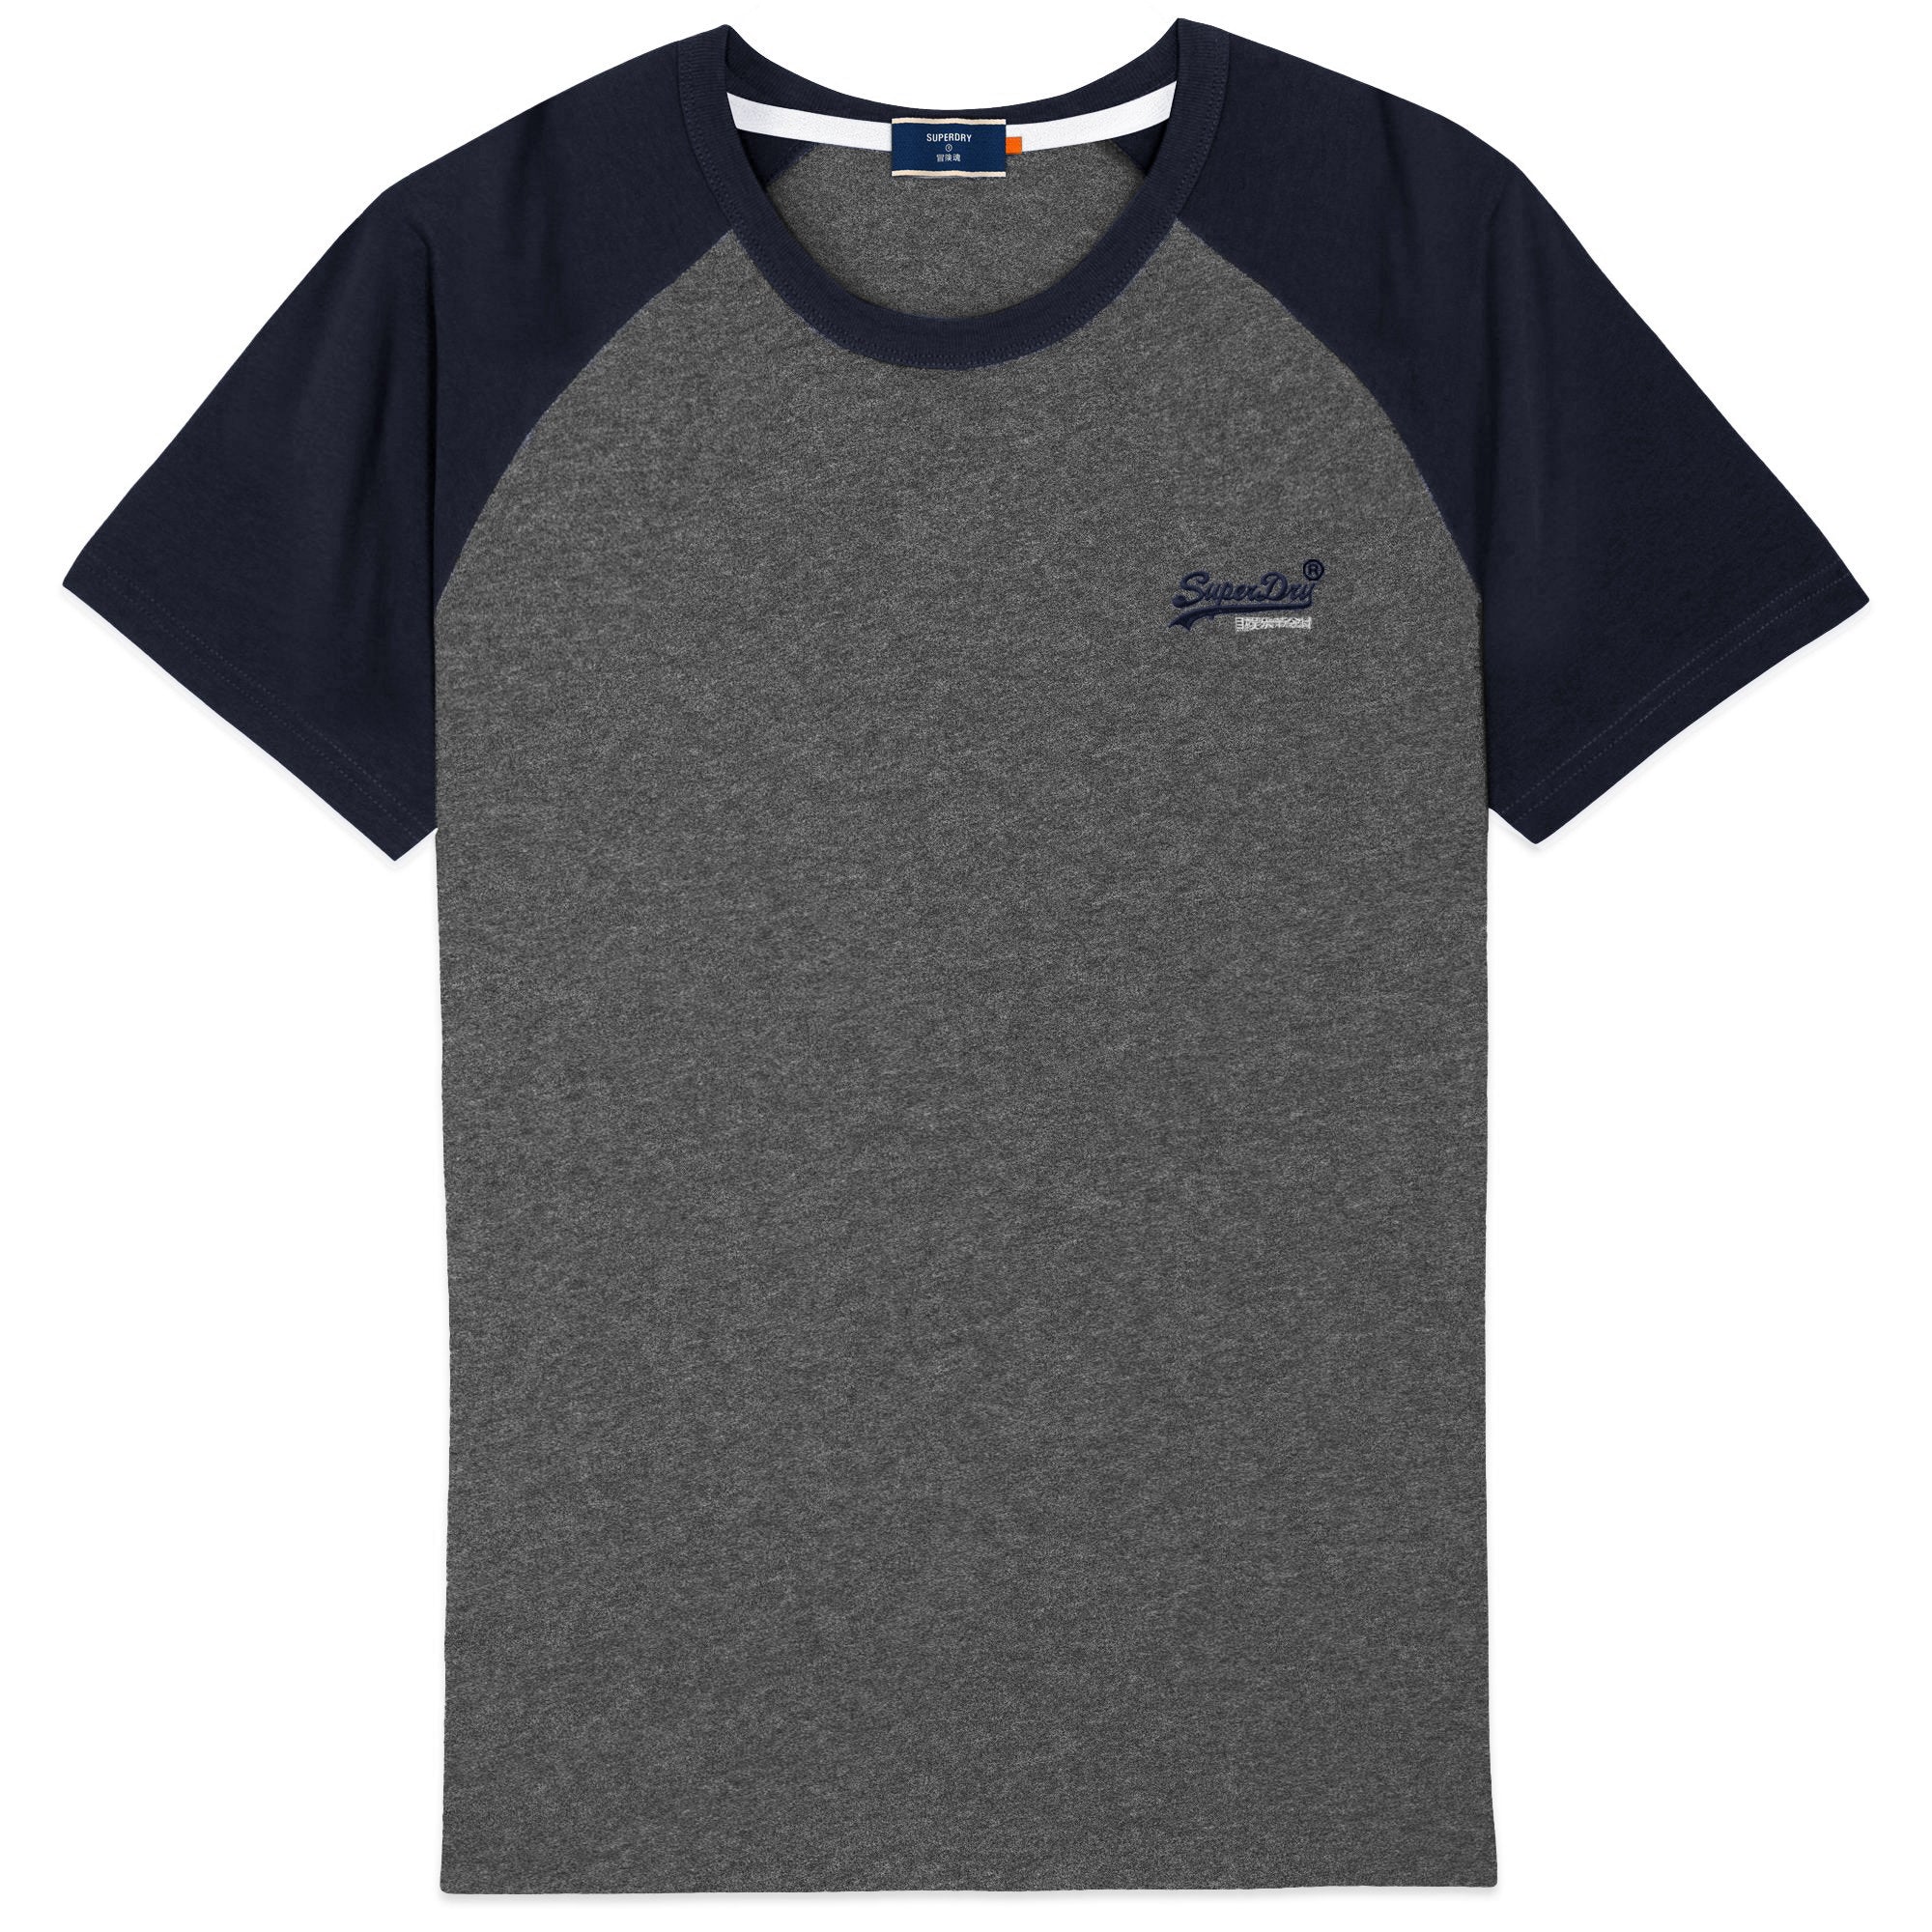 Superdry Orange Label Baseball T-Shirt - Black Grit